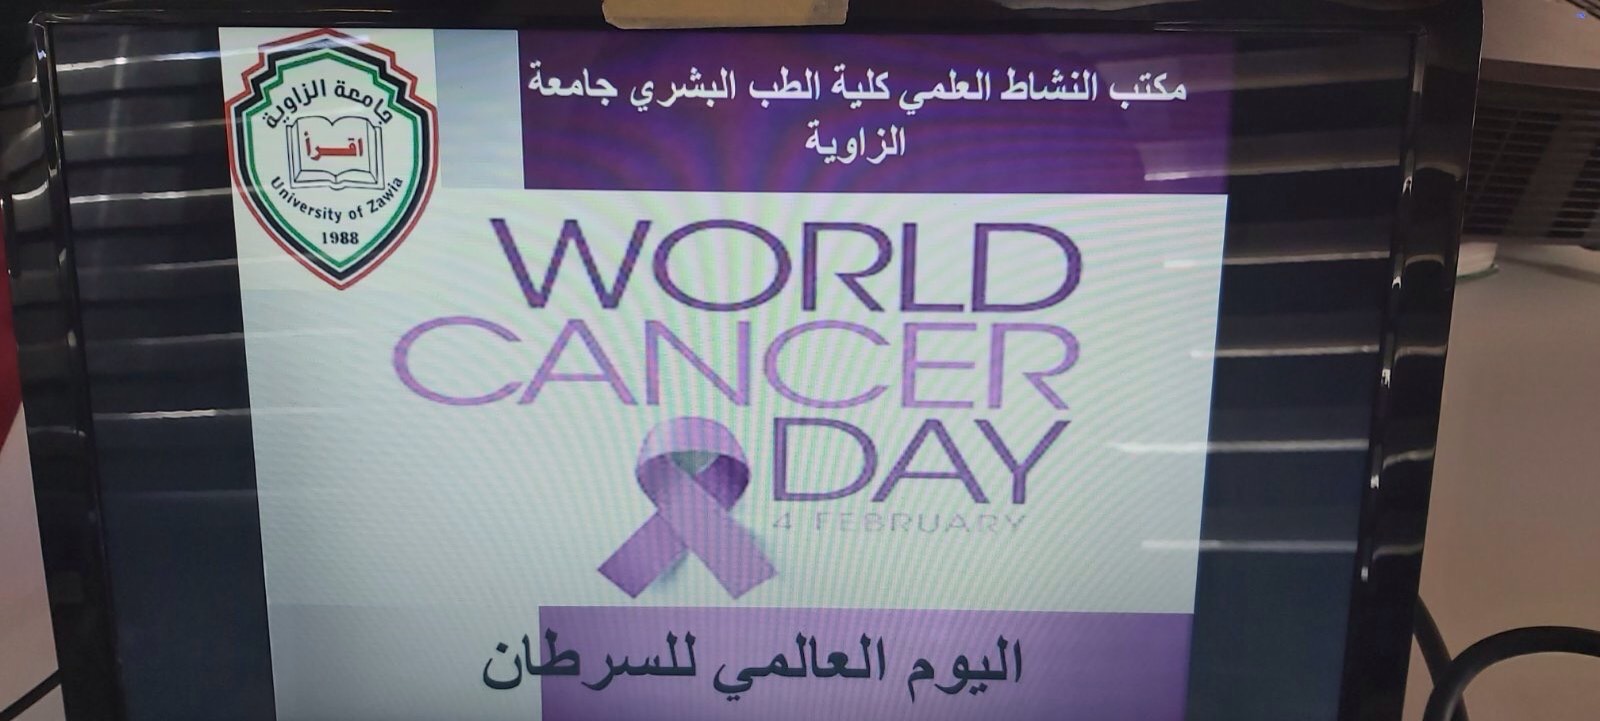 يوم علمي بمناسبة اليوم العالمي للسرطان